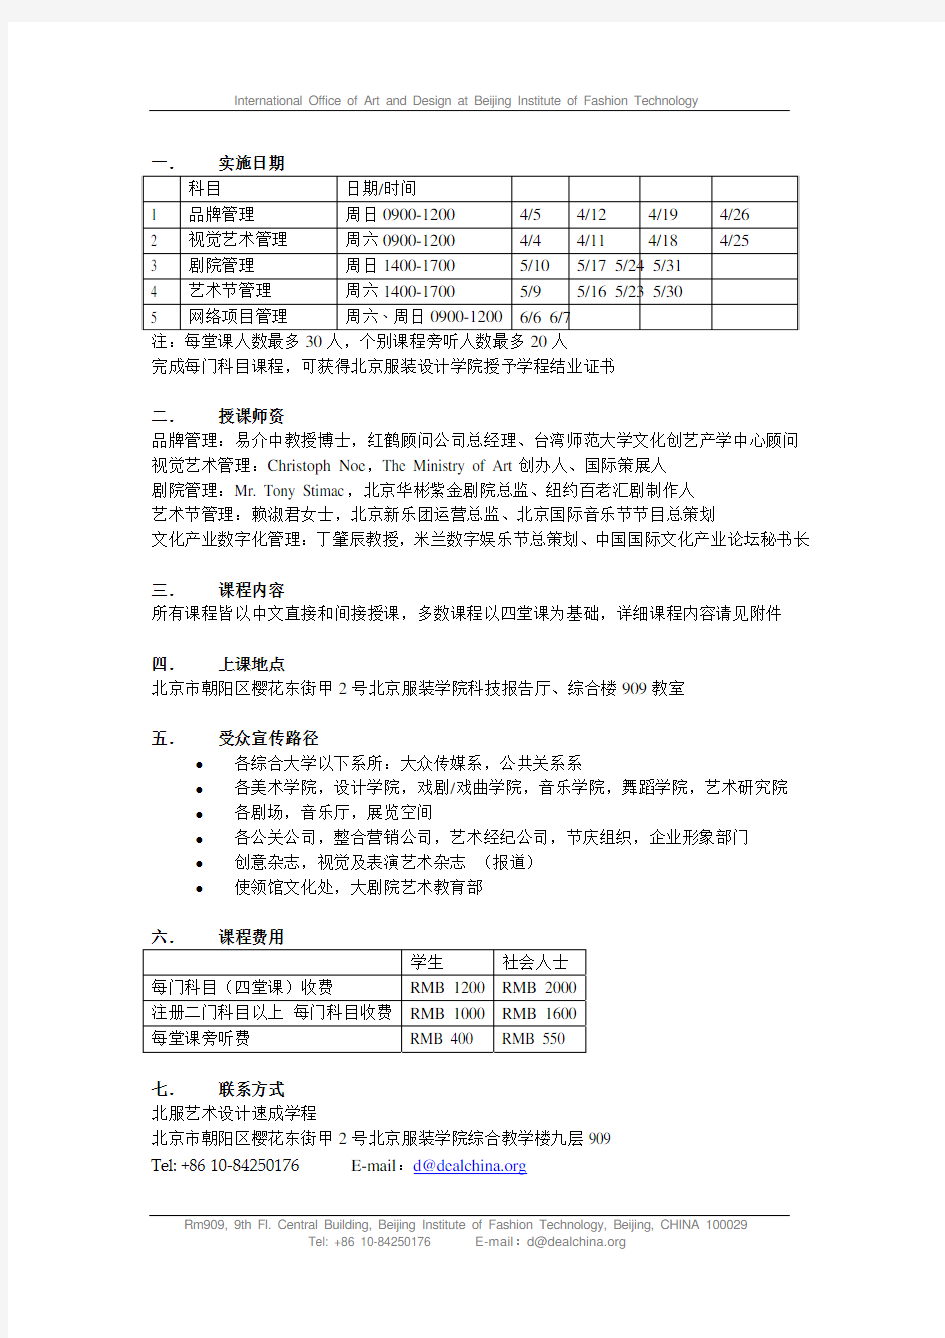 北京服装学院艺术设计管理速成学程(北服艺术设计速成学程)